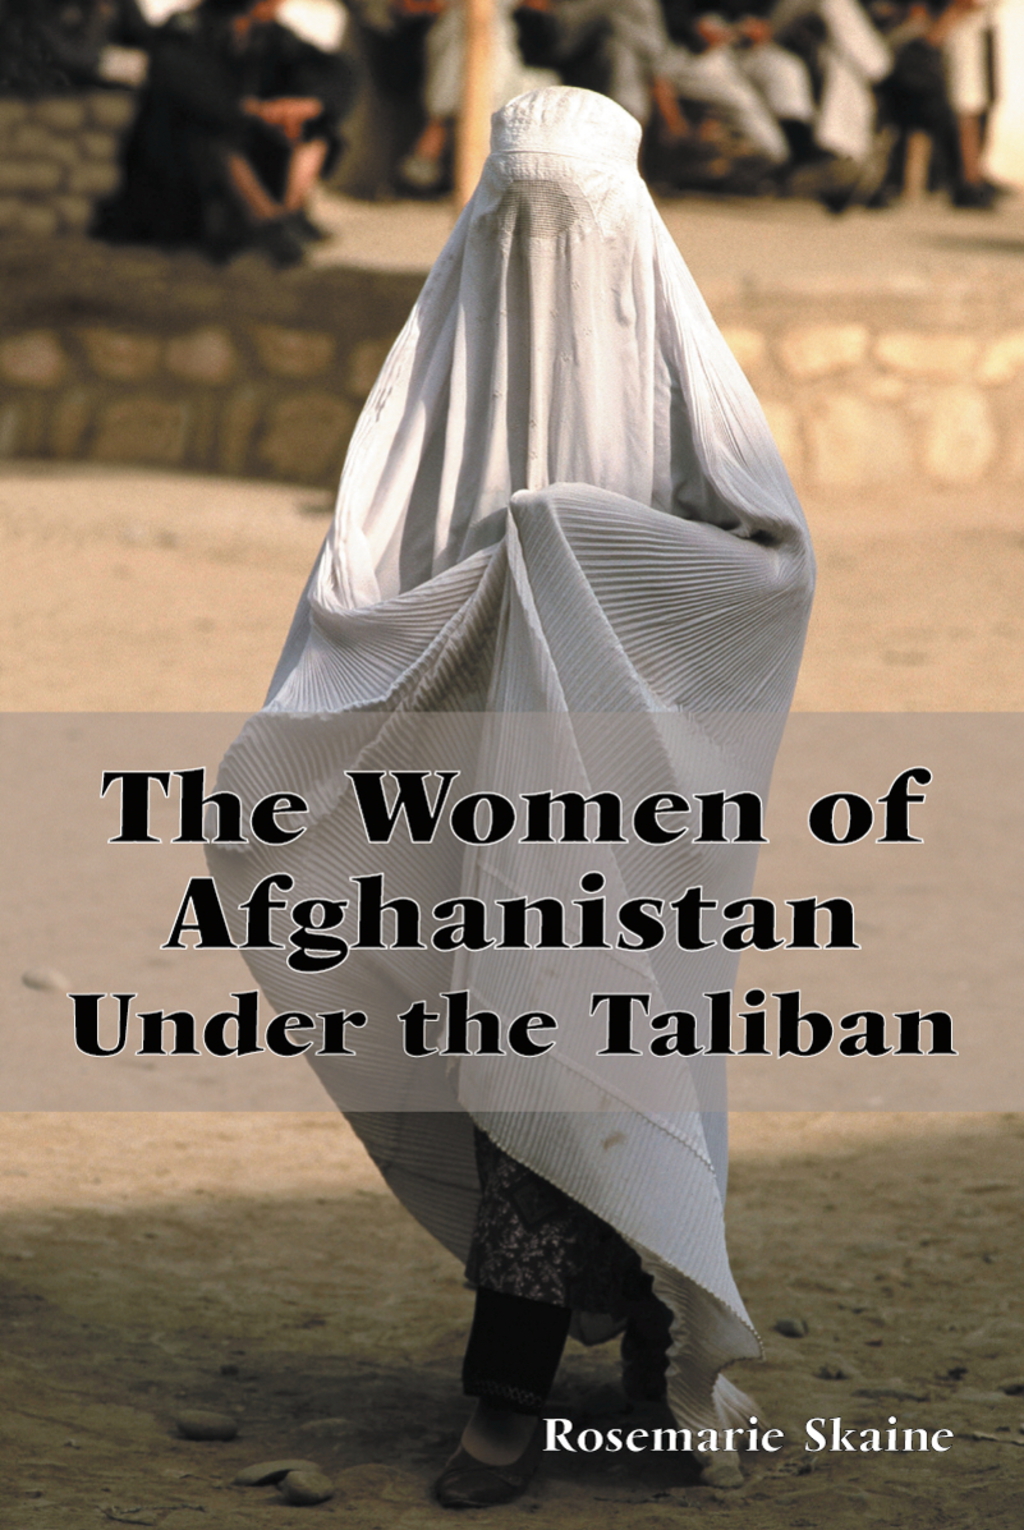 The Women of Afghanistan Under the Taliban (eBook) - Rosemarie Skaine